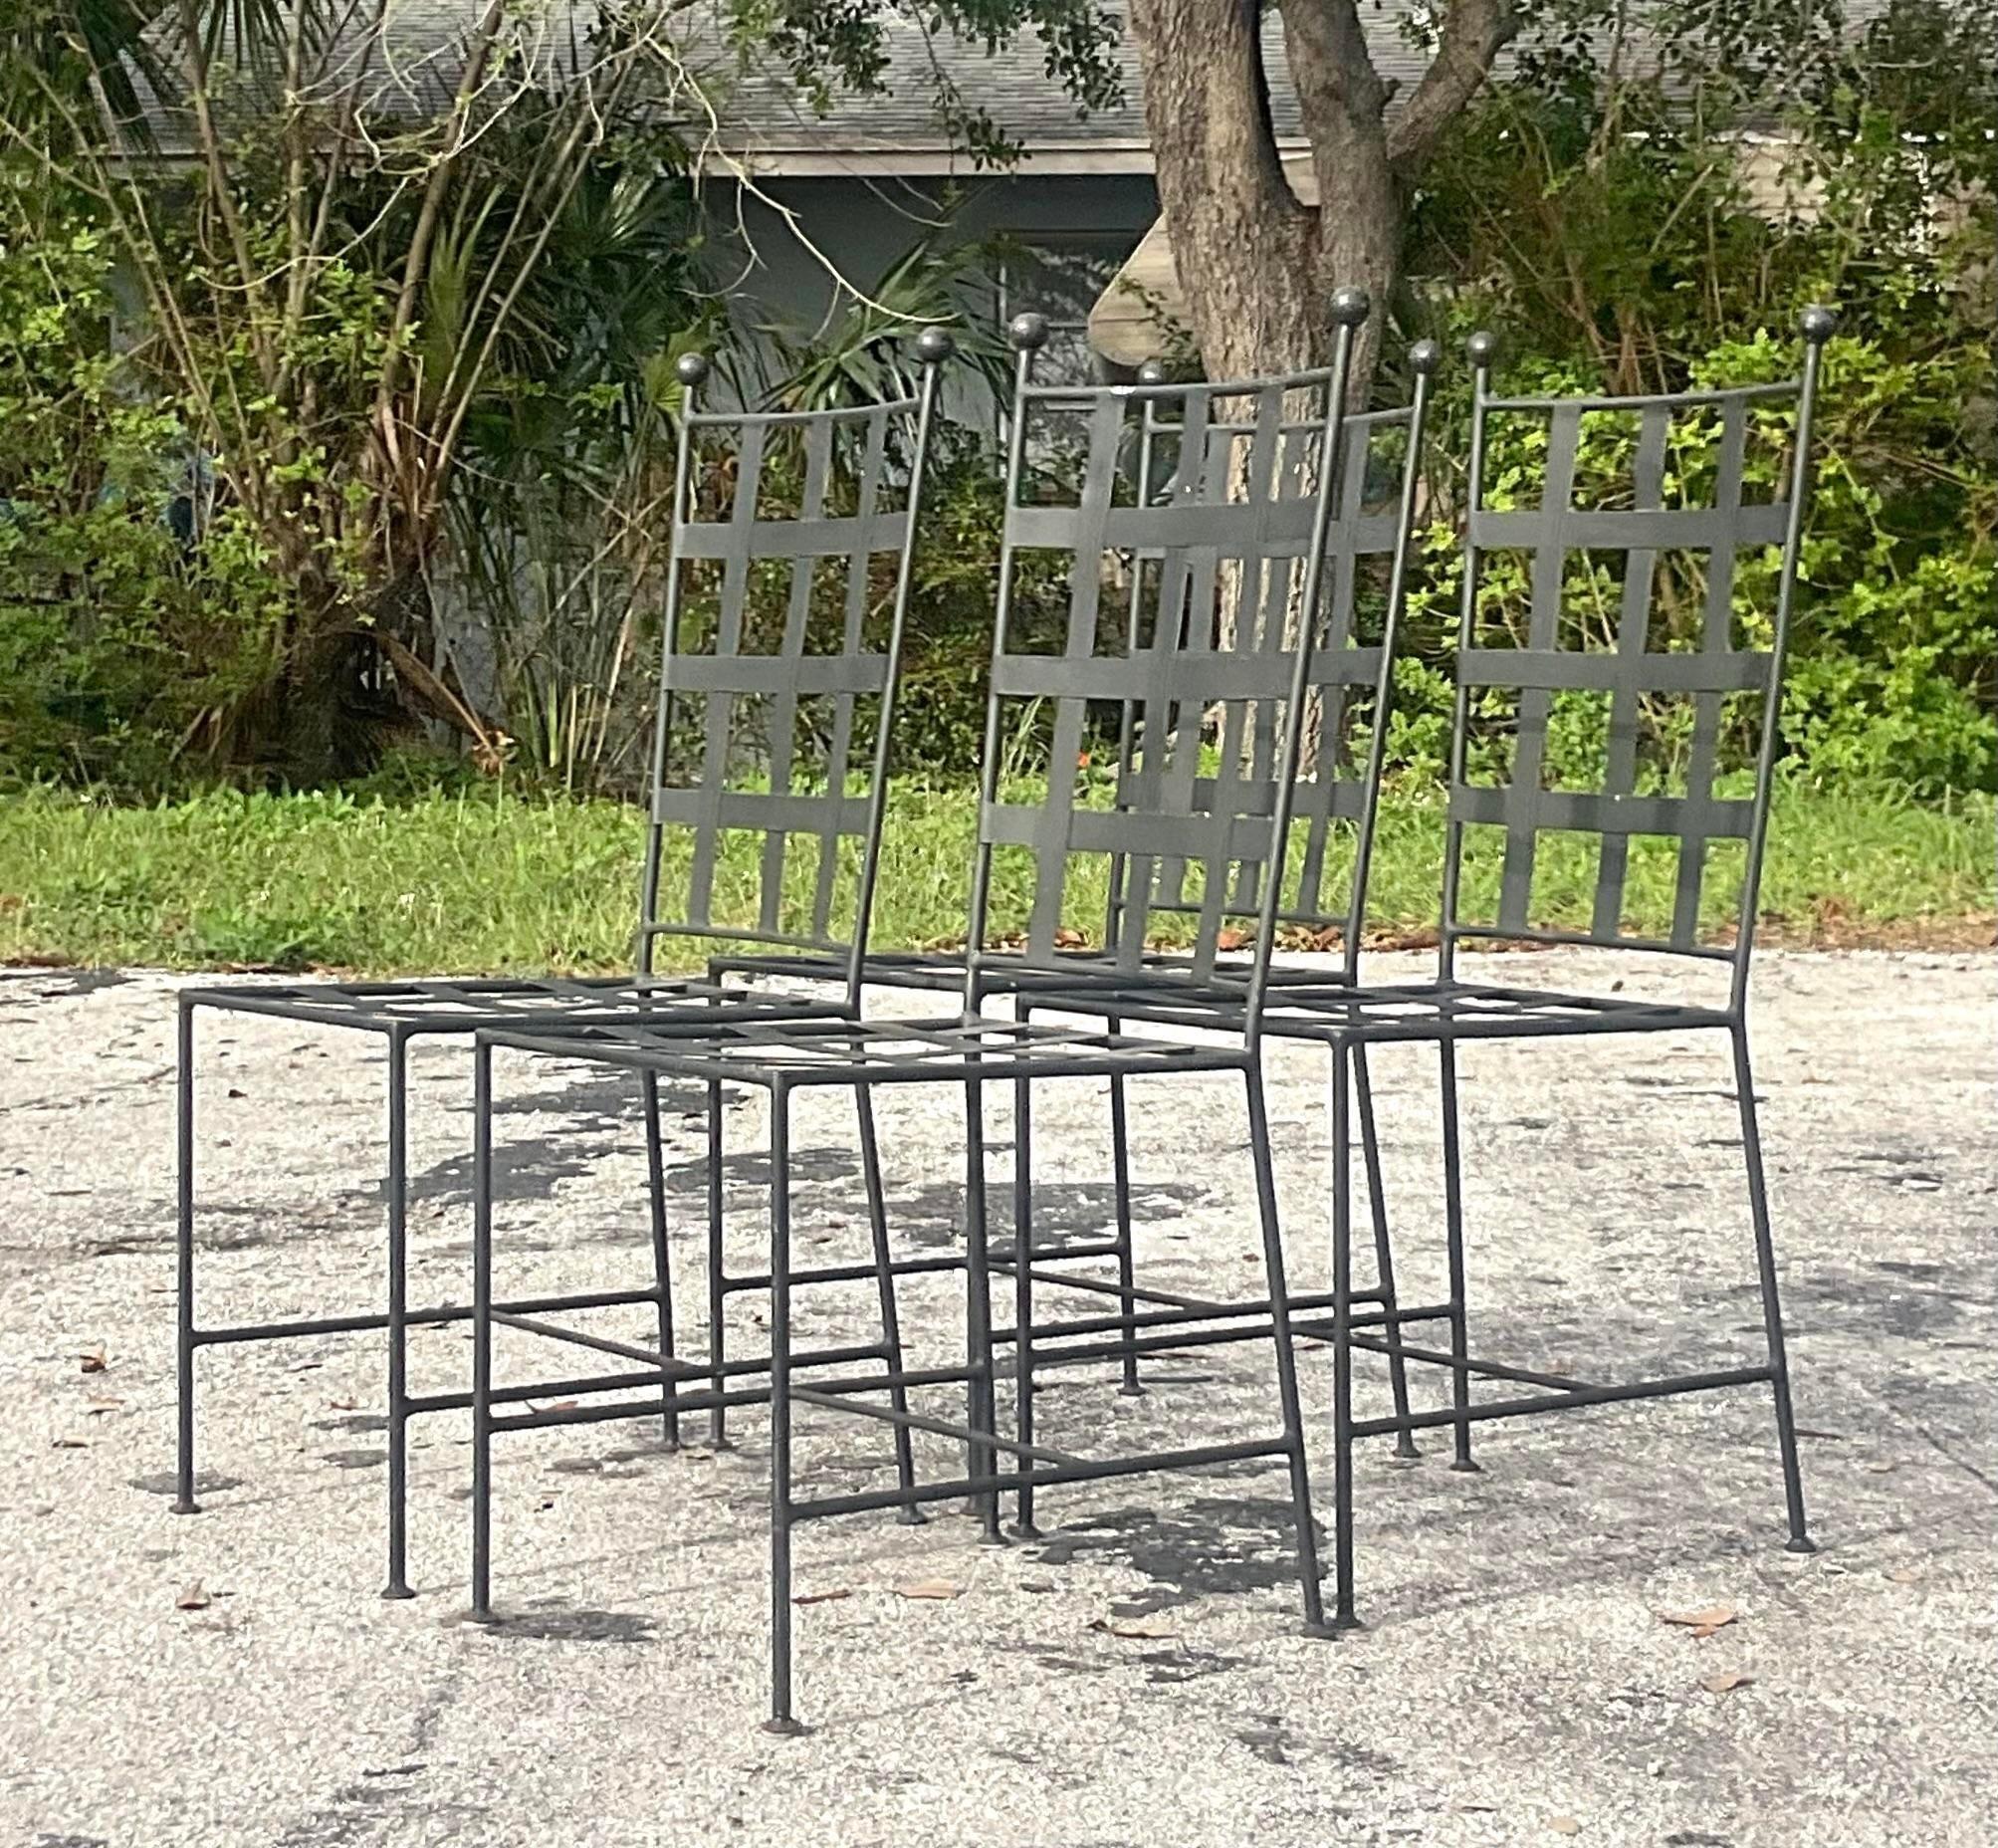 Un fabuleux ensemble de quatre chaises de salle à manger vintage Coastal pour l'extérieur. Un cadre chic en fer forgé avec un magnifique design de grille à bandes. Acquis d'une propriété de Palm Beach. 